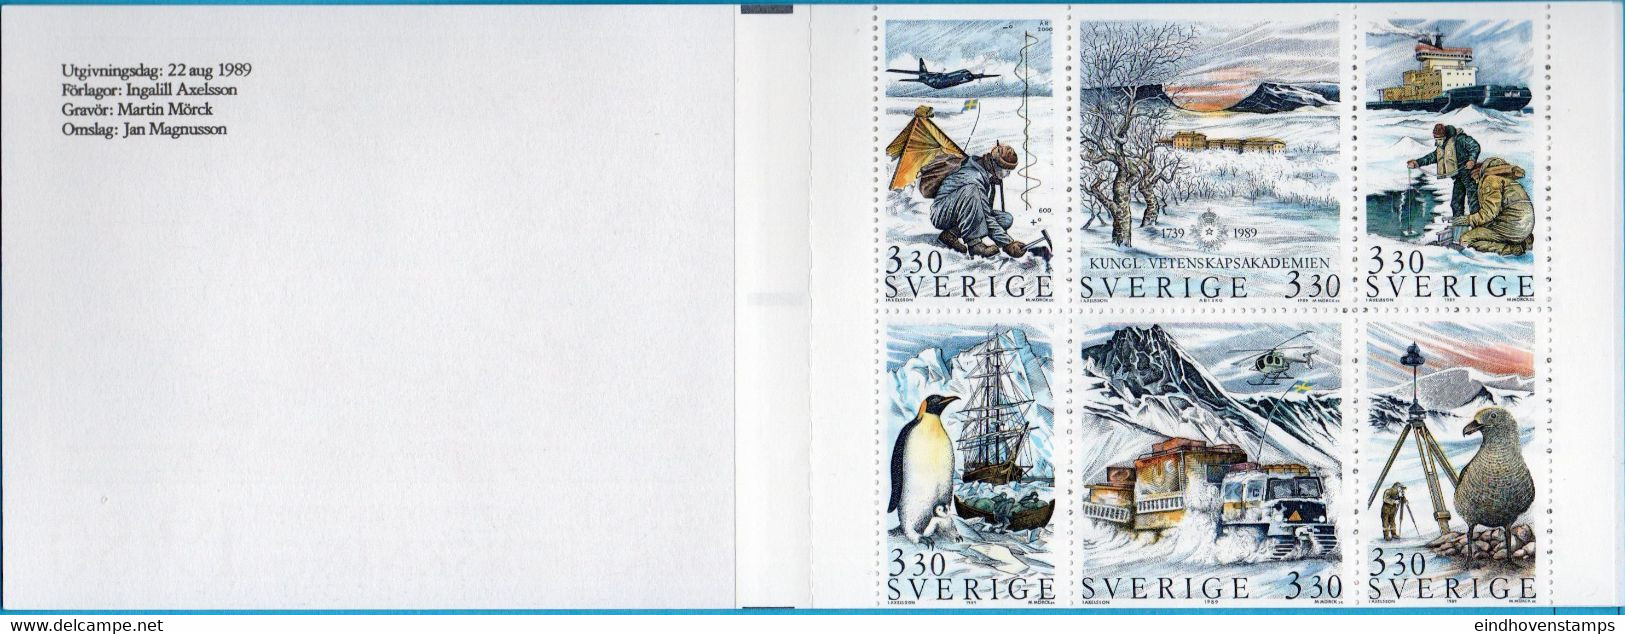 Sweden Sverige 1989 Stamp Booklet Polar Research Cancelled Academy Of Science MNH 89M141 - Programas De Investigación